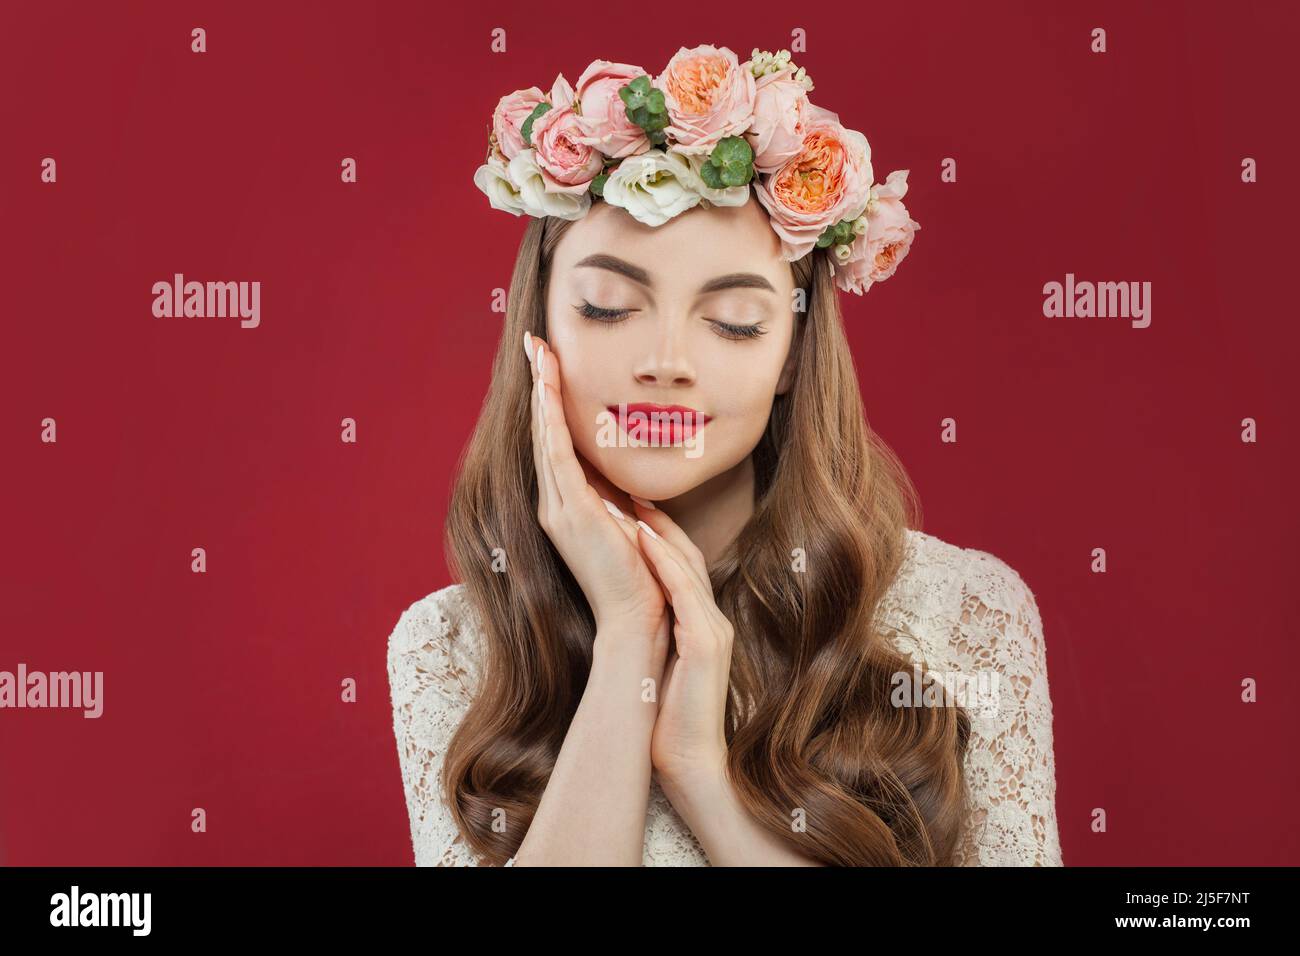 Belle jeune femme avec fleurs roses d'été, cheveux longs permed et maquillage de mode Banque D'Images